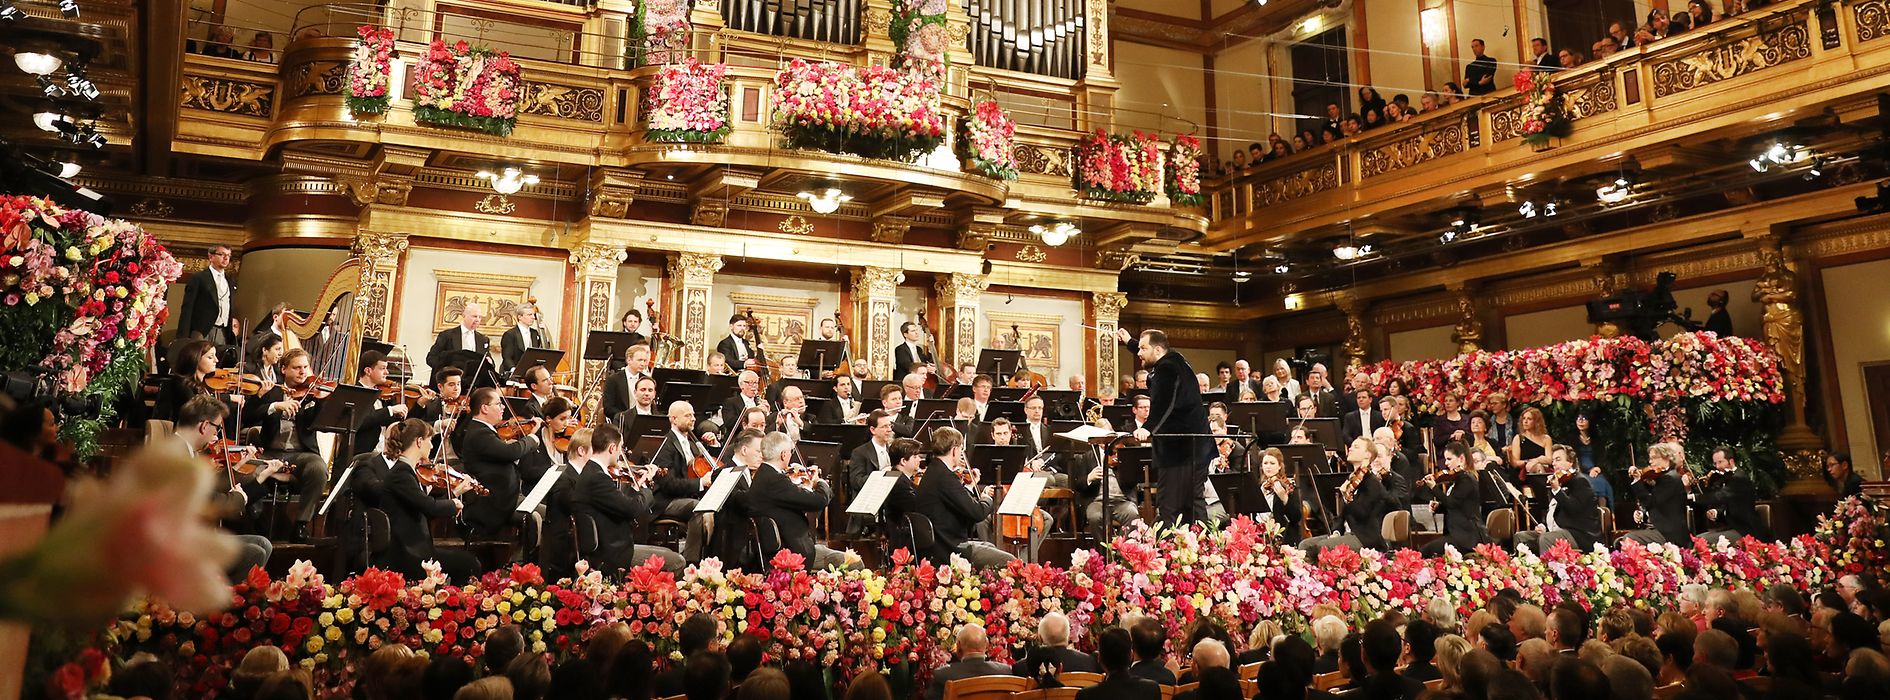 Concerto di Capodanno dell’Orchestra Filarmonica di Vienna nella Sala dorata del Musikverein